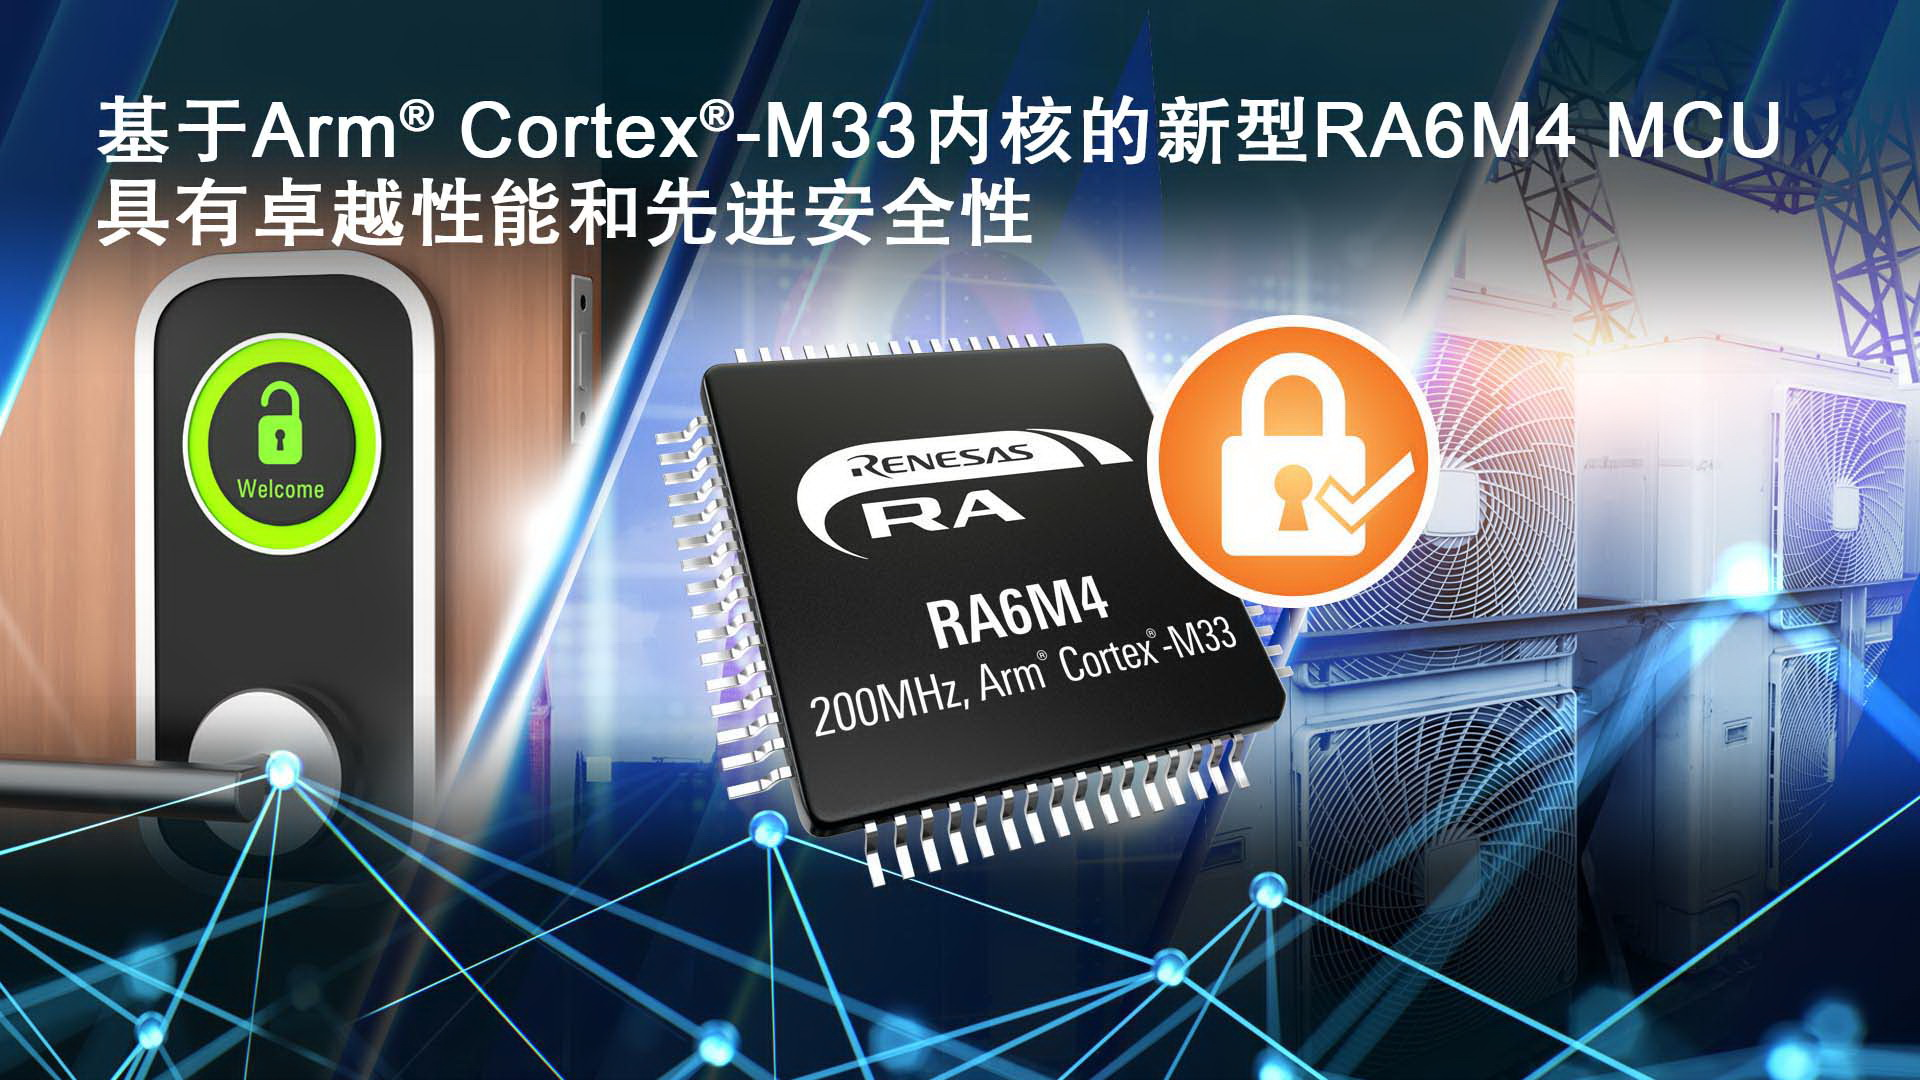 瑞萨电子推出基于Arm Cortex-M33的RA6M4 MCU产品群为物联网应用提供卓越性能和先进安全性